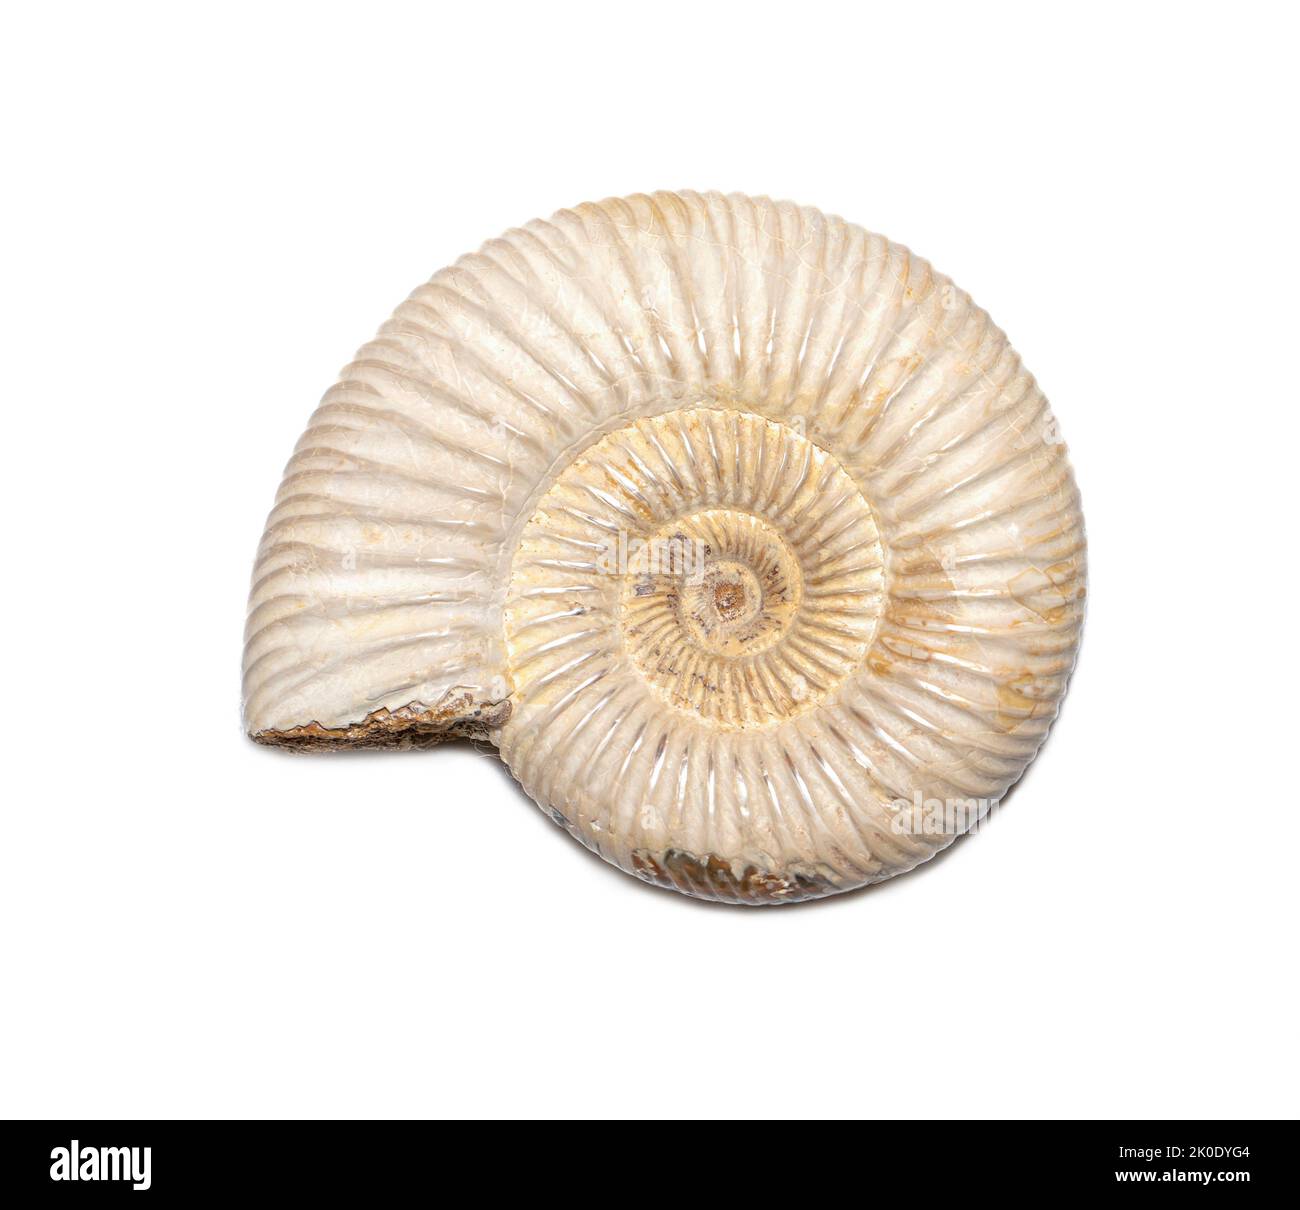 Image de l'ammonite sur fond blanc. Fossile. Coquillages. Banque D'Images